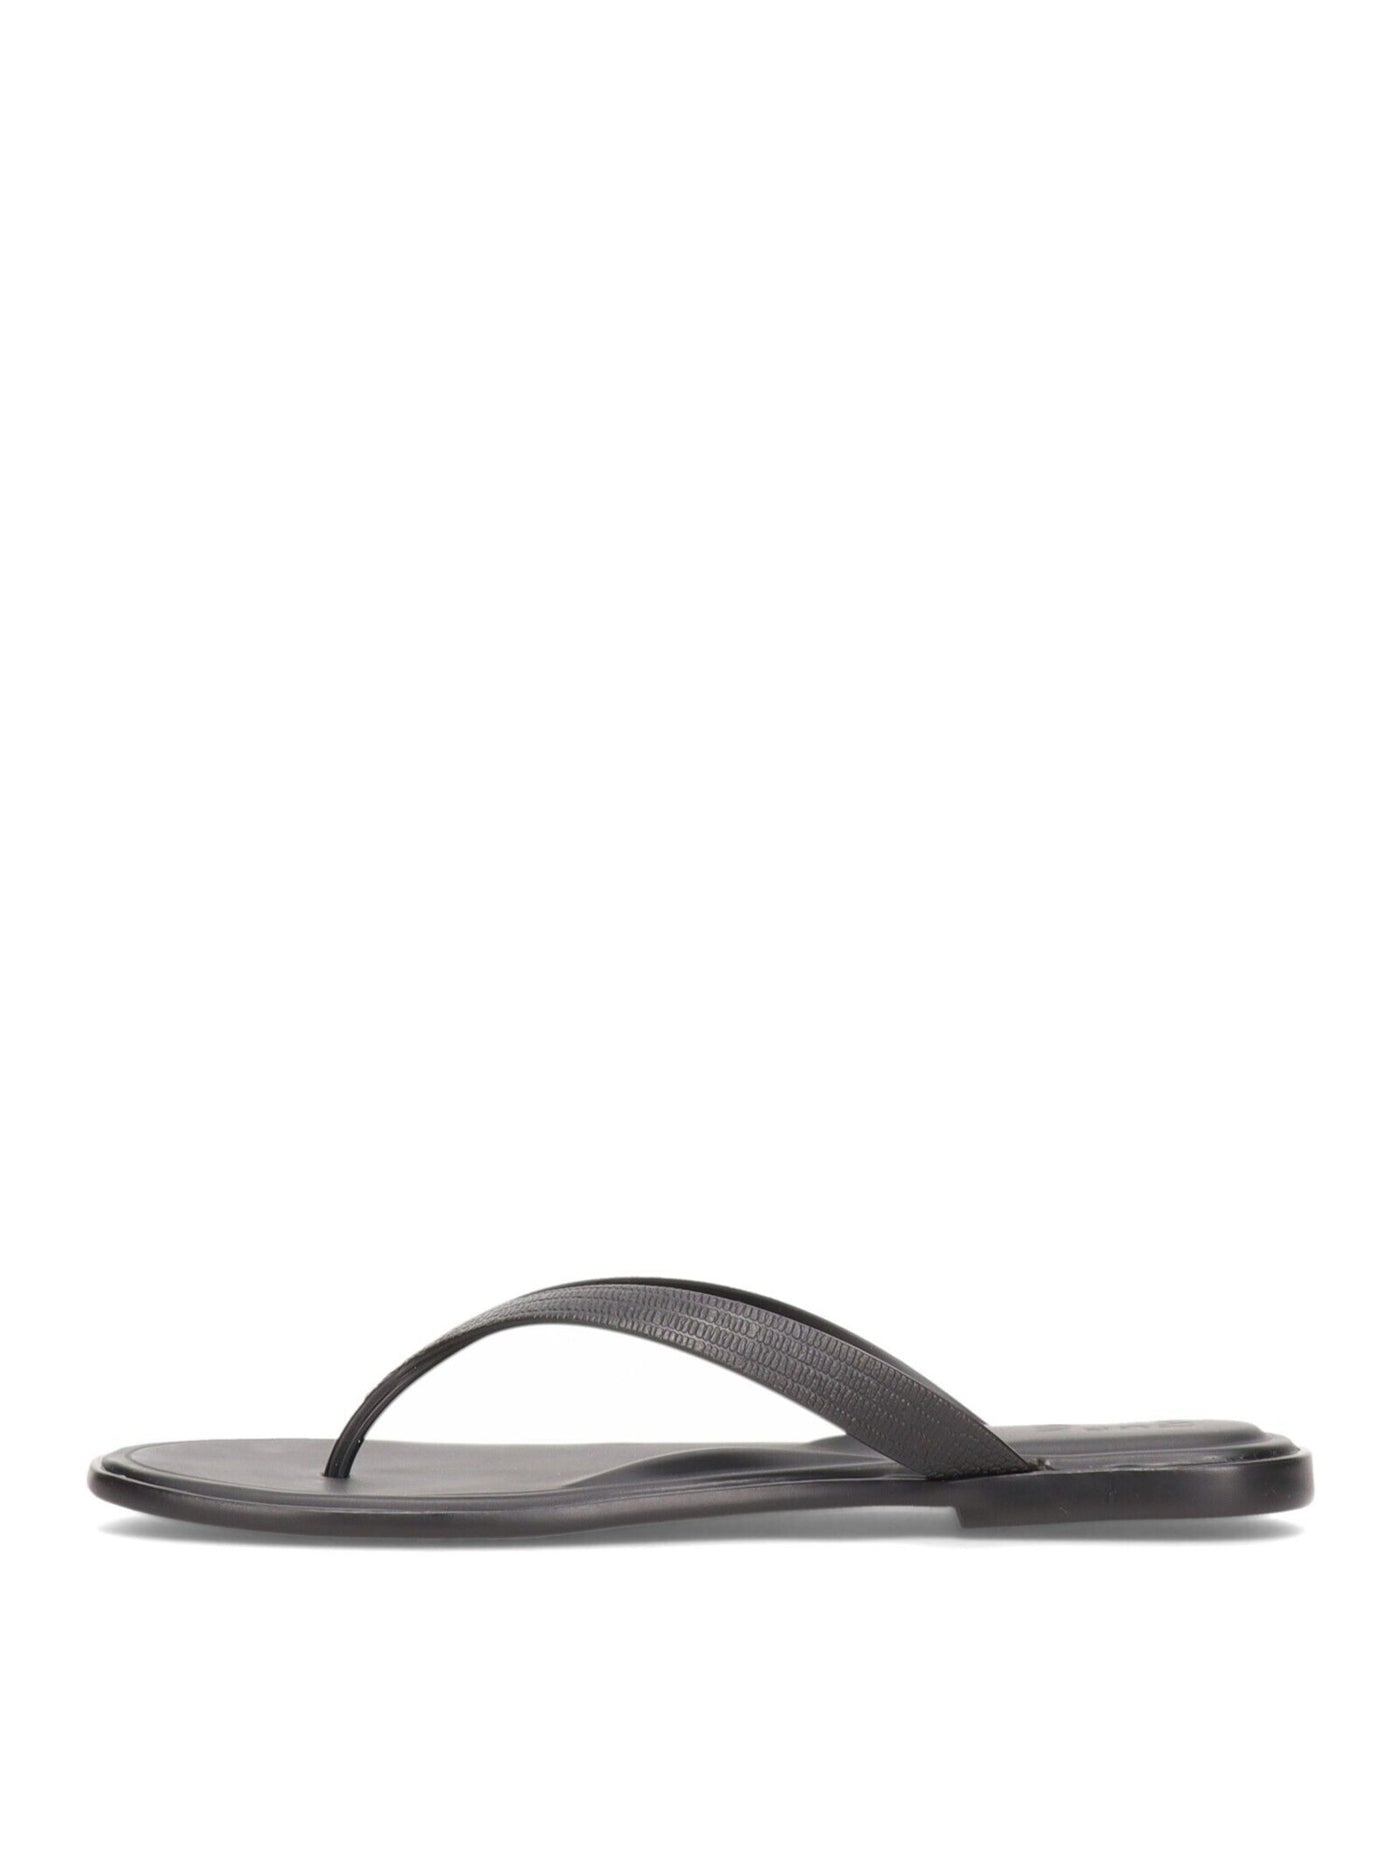 NANETTE LEPORE Womens Black Padded Non-Slip Jemm Round Toe Slip On Thong Sandals 9.5 M